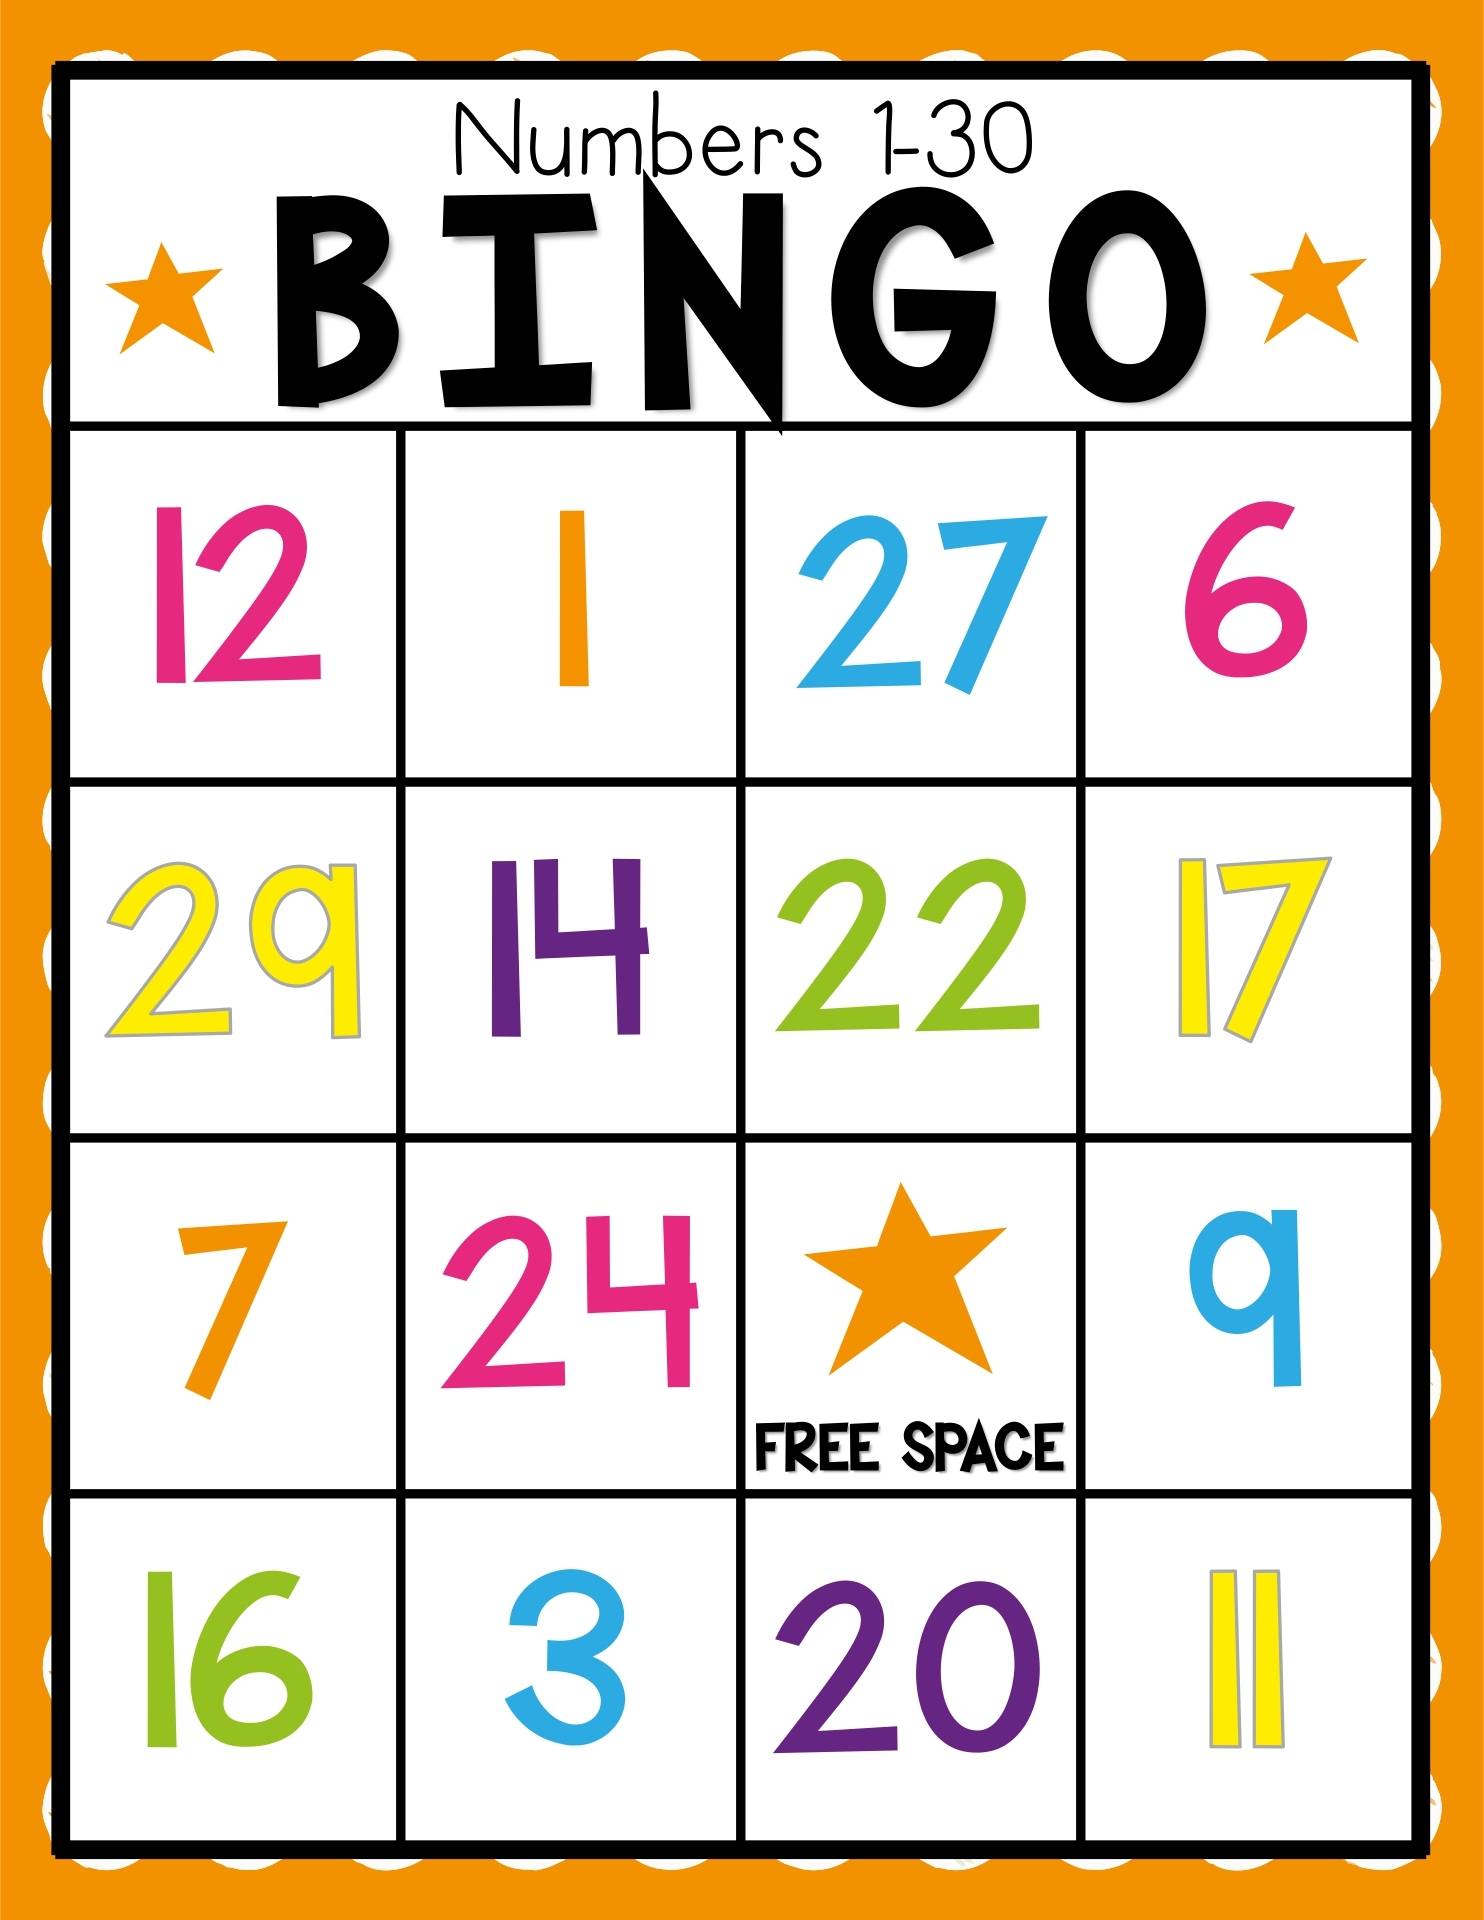 75 number bingo cards